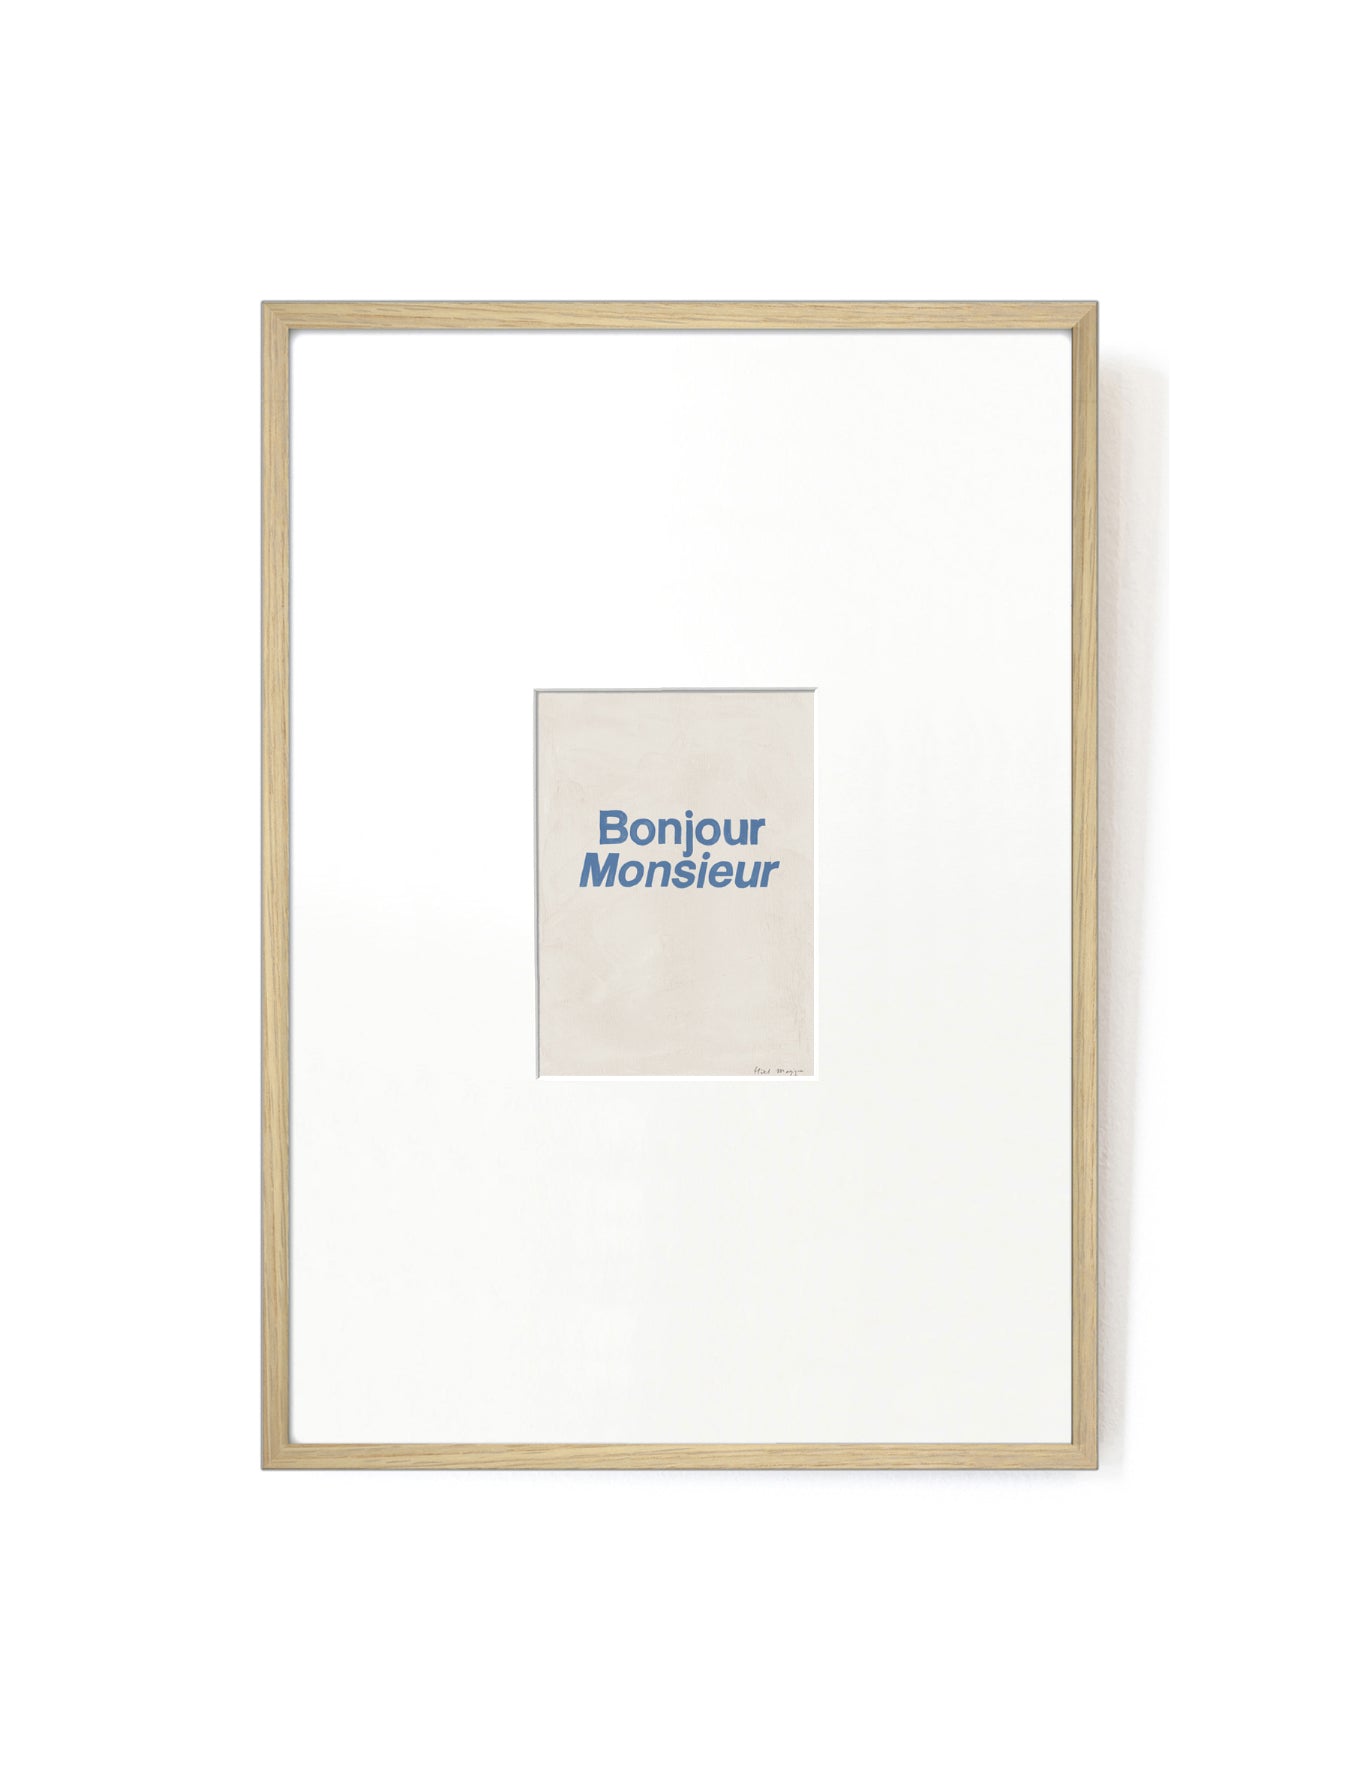 Bonjour Monsieur card artwork framed